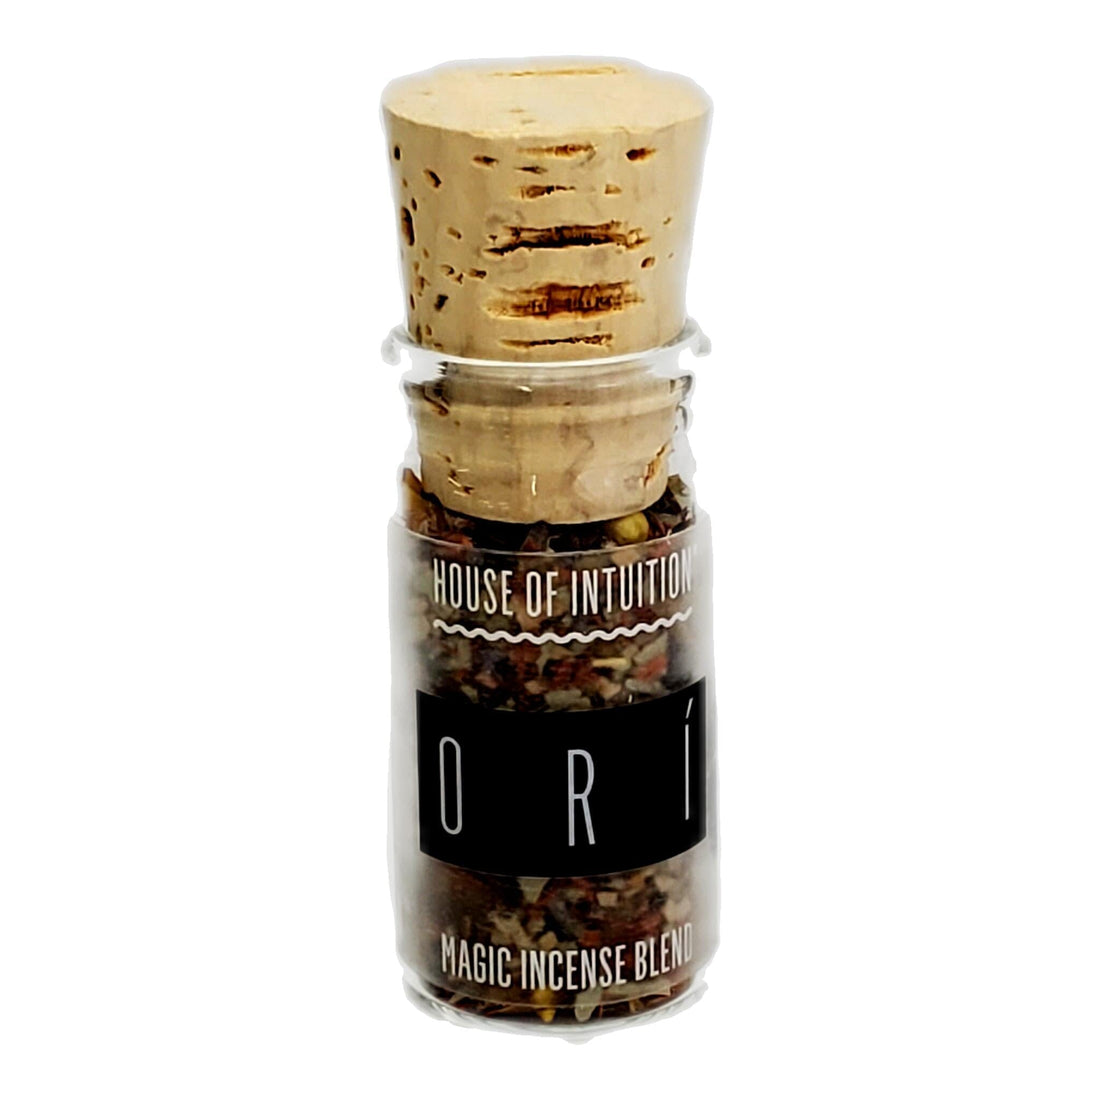 Ori Incense Blend "Glass Jar" Incense & Holders -Incense V50 